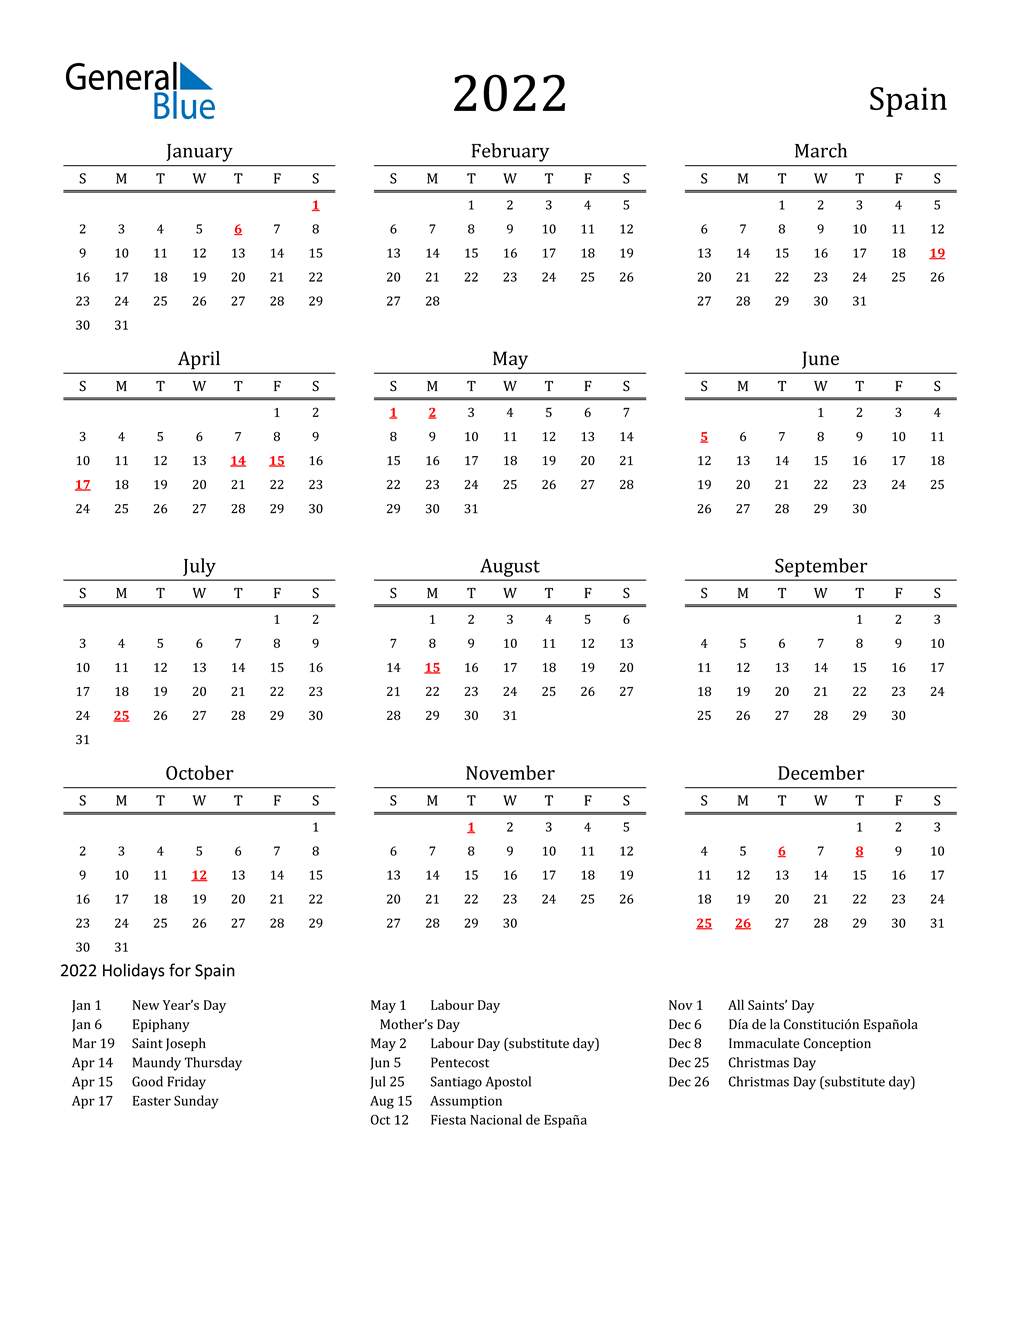 Spanish Calendar 2022 2022 Spain Calendar With Holidays